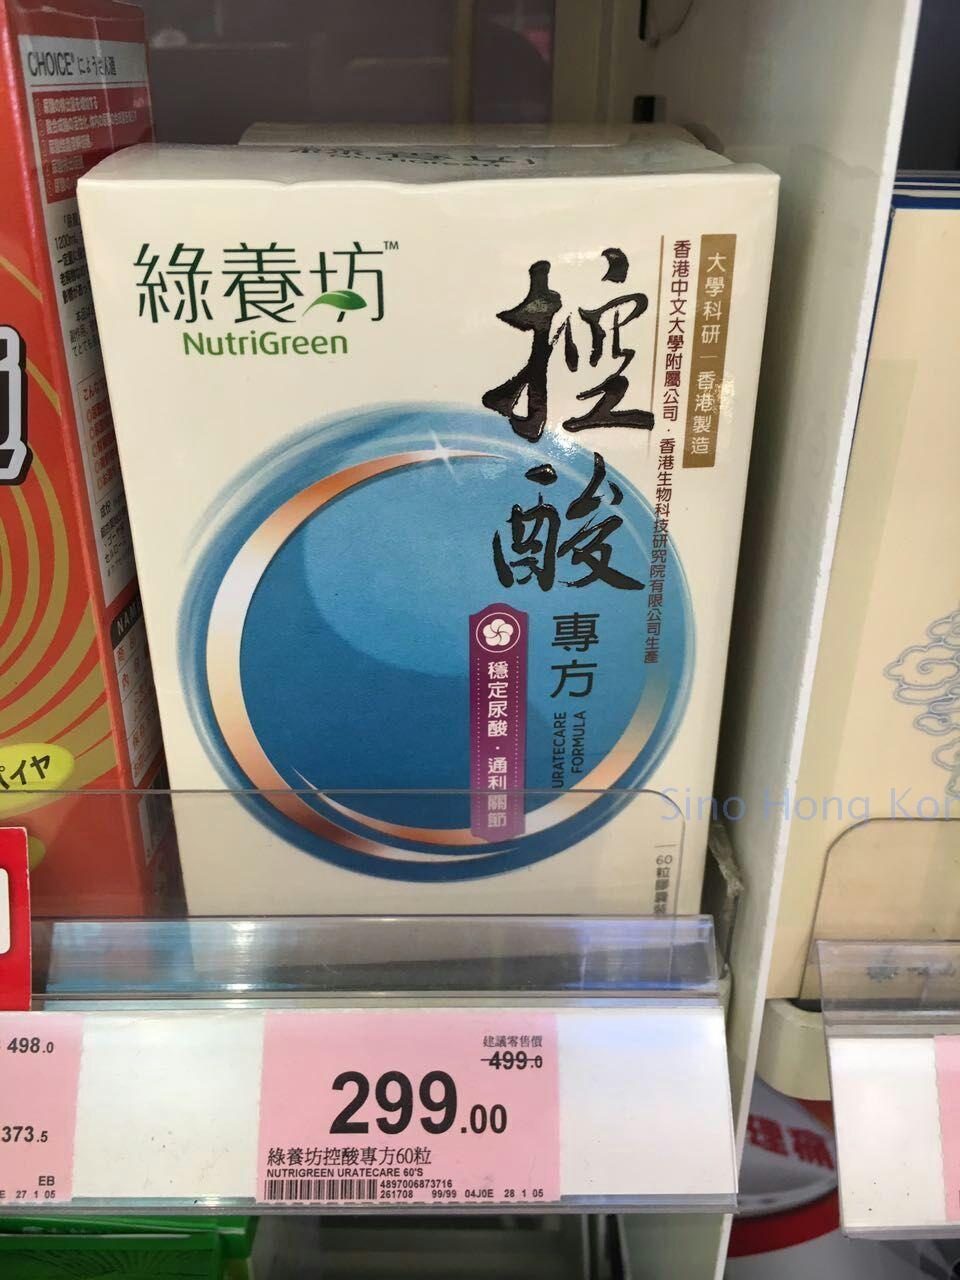 香港代购 正品 绿养坊控酸专方(穩定尿酸通利關節) 2盒包邮含小票